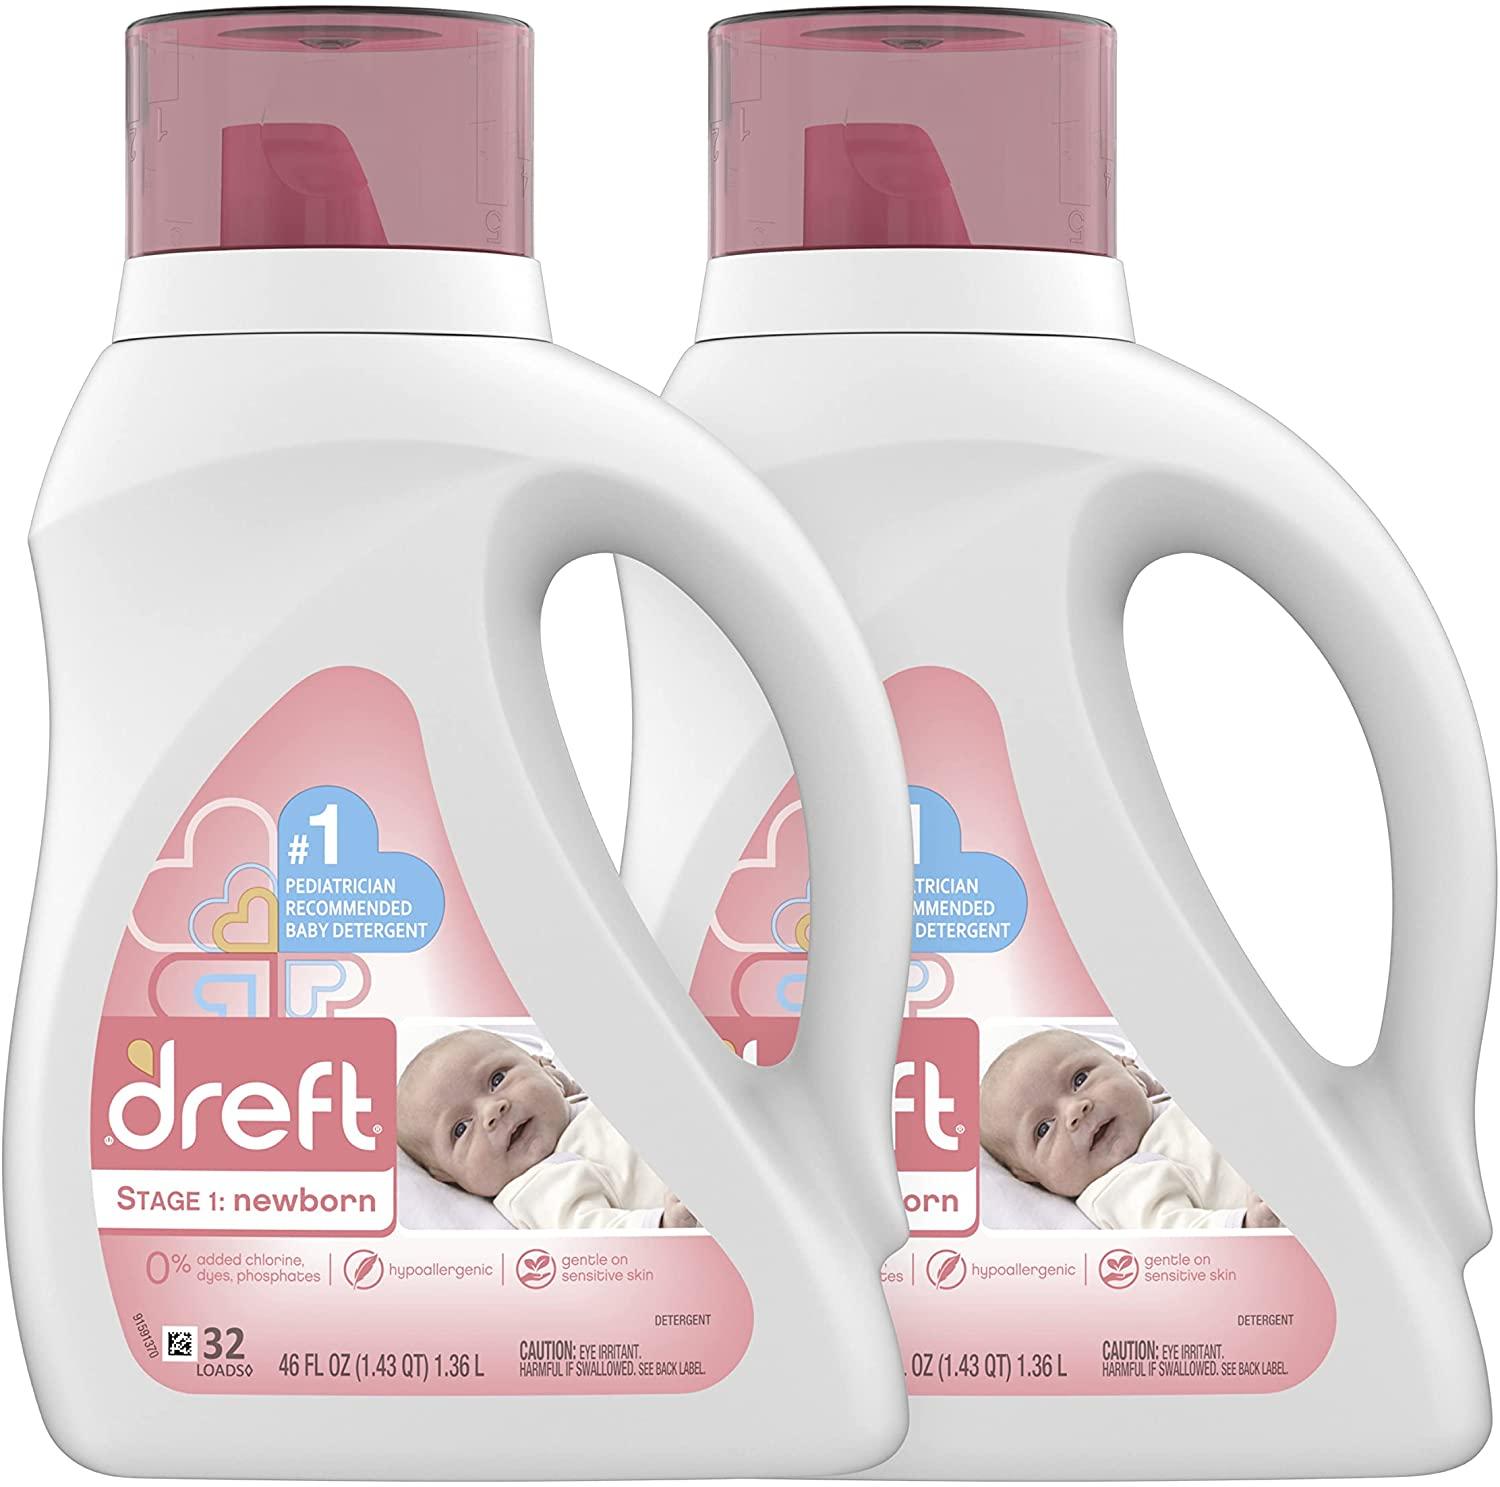 Dreft Stage 1 Newborn Hypoallergenic HE Liquid Baby Laundry Detergent for $13.44